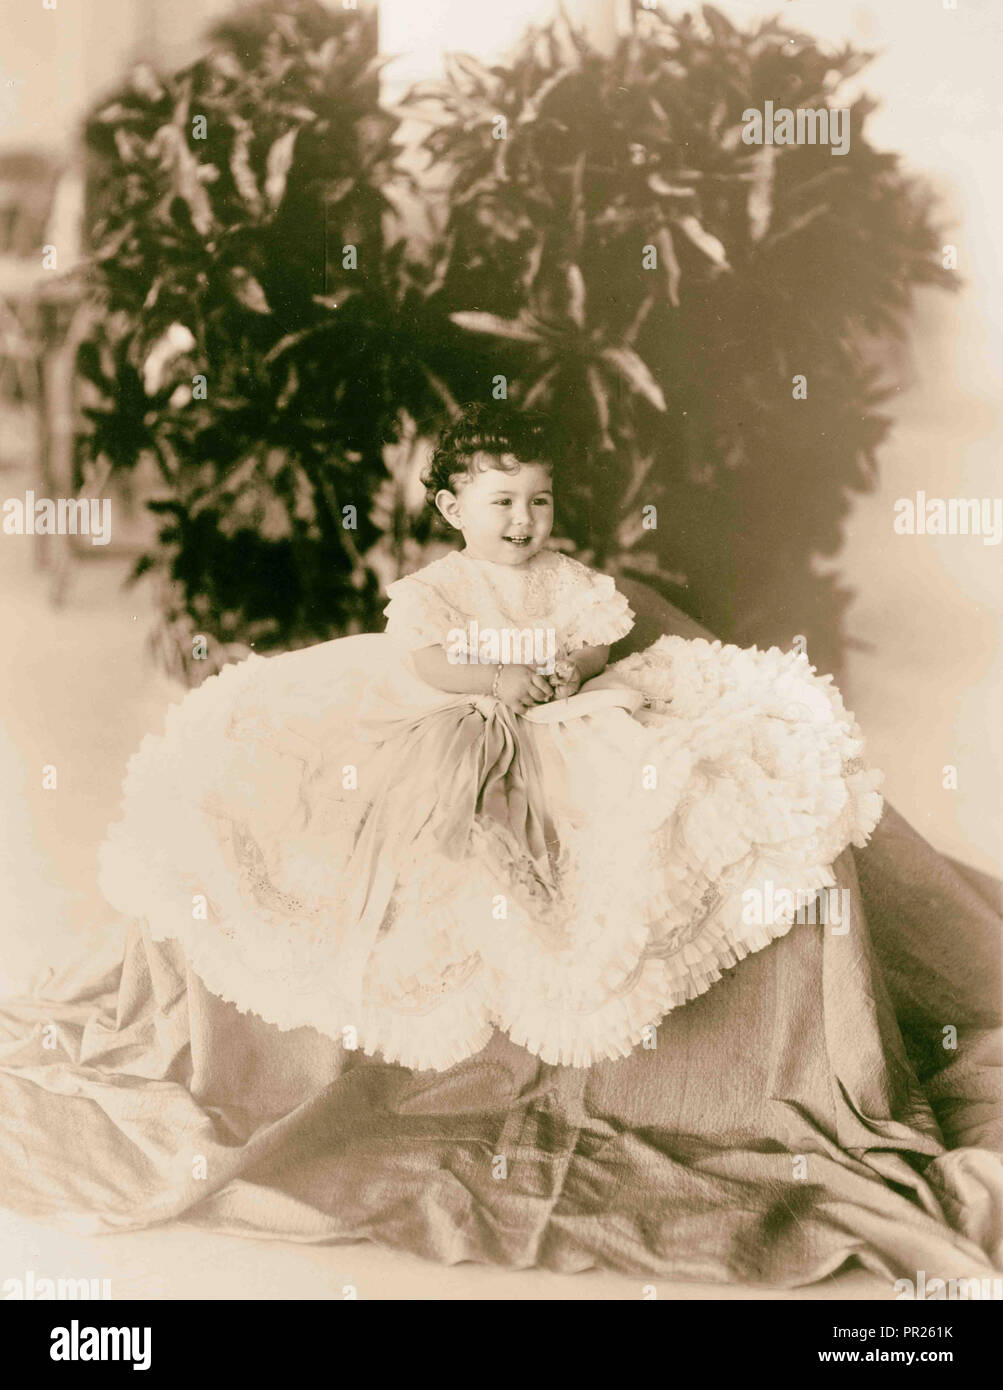 Daughter of King Farouk of Egypt. 1920 Stock Photo